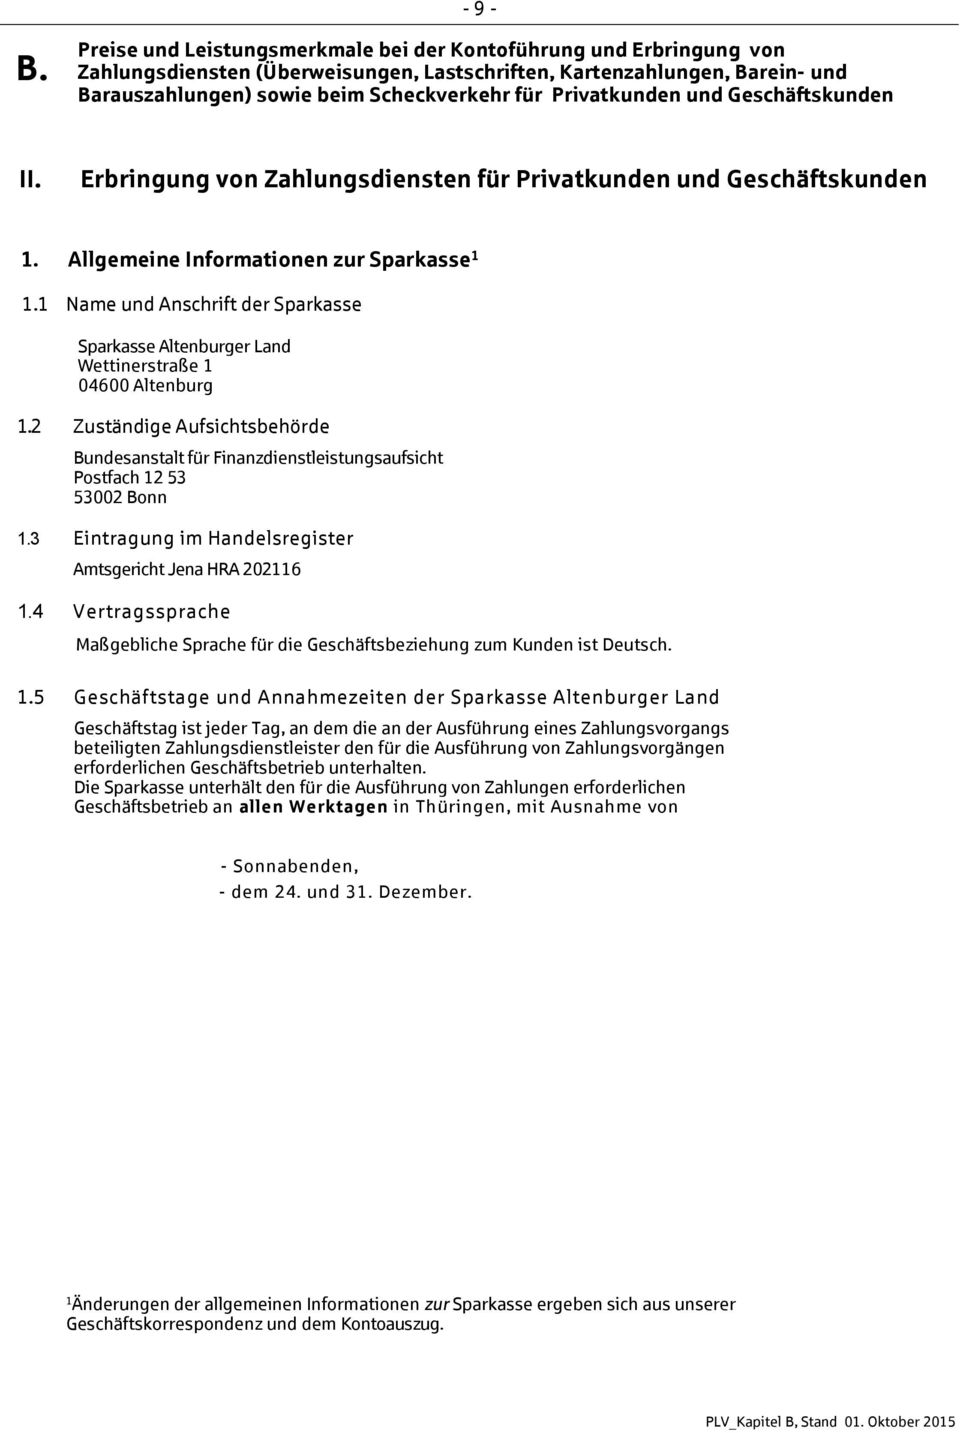 2 Zuständige Aufsichtsbehörde Bundesanstalt für Finanzdienstleistungsaufsicht Postfach 12 53 53002 Bonn 1.3 Eintragung im Handelsregister Amtsgericht Jena HRA 202116 1.